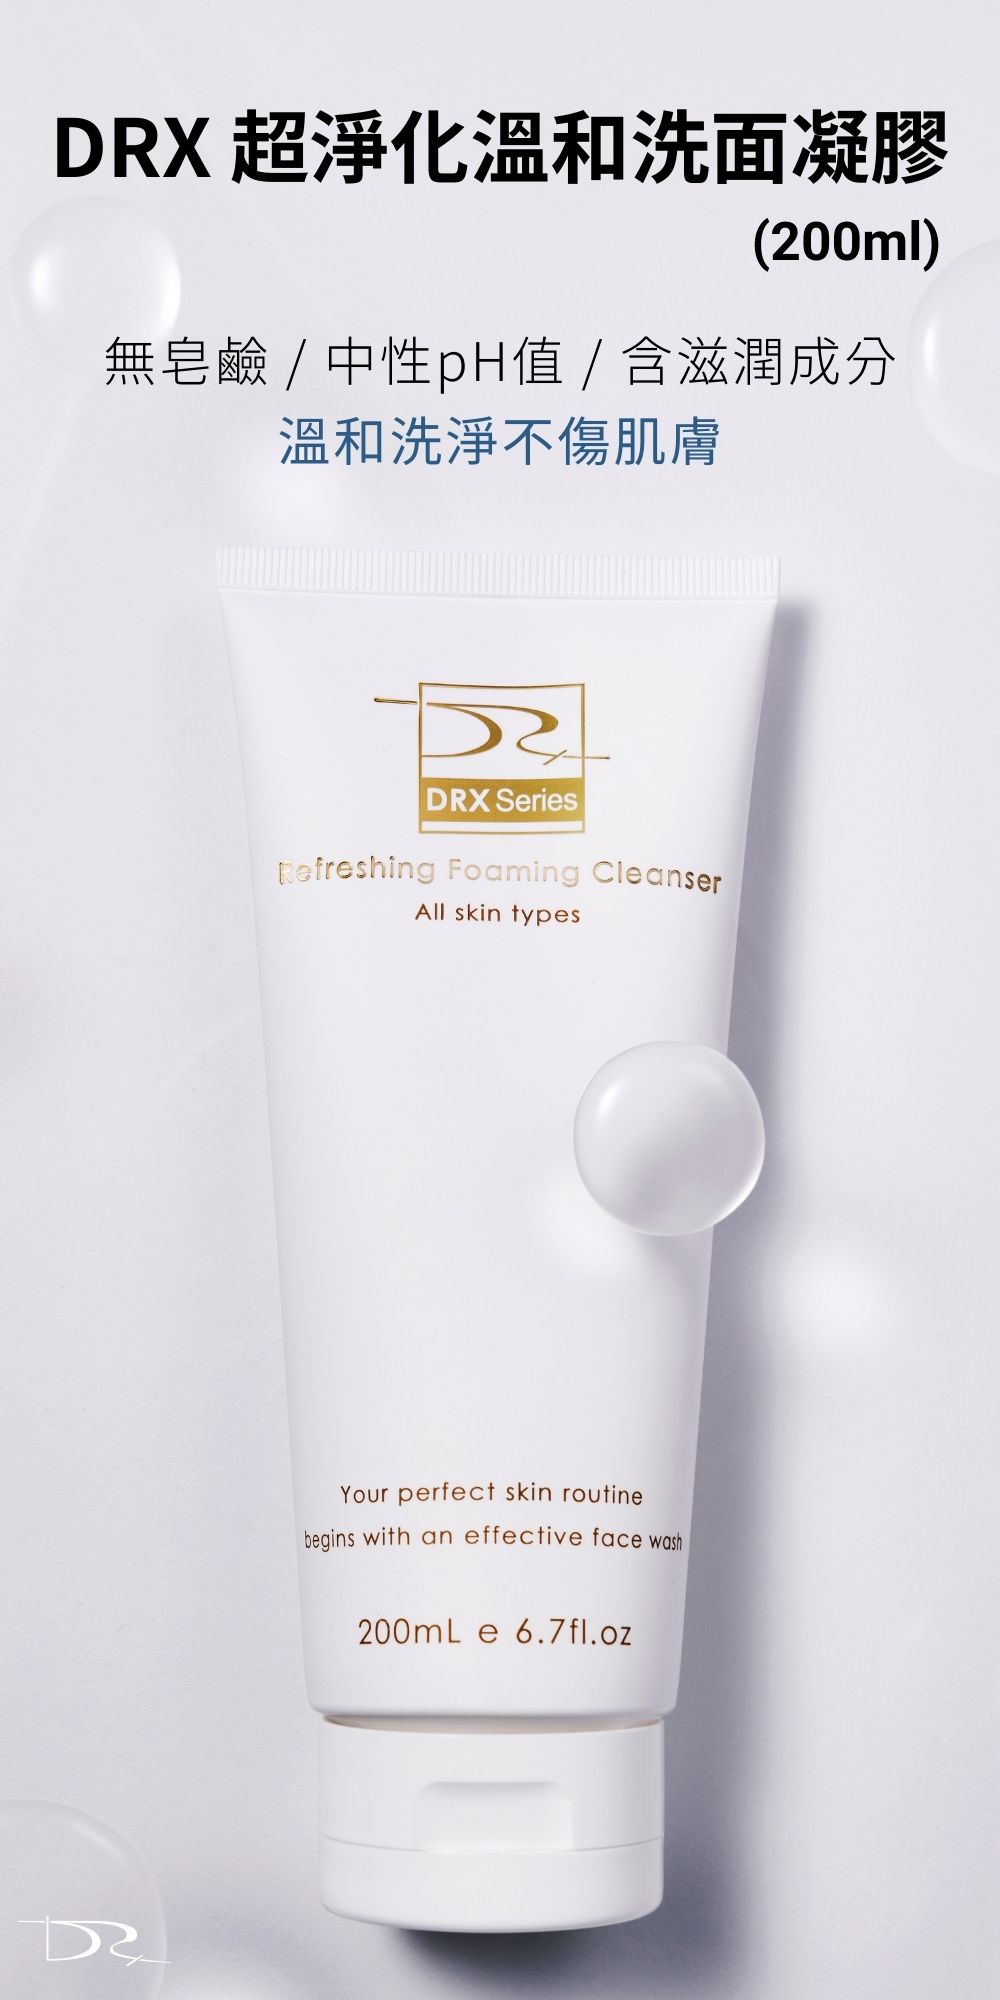 最適合你的洗面乳就選擇DRX超淨化溫和洗面凝膠！因為DRX超淨化溫和洗面凝膠兼具潔淨、調理、水潤、修護的功能，是全膚質都可以使用的溫和洗面乳，不綁架皮膚原有的天然水分，洗臉後有透徹的潔淨感，卻不緊繃不乾澀，DRX超淨化溫和洗面凝膠是最好的洗面乳。